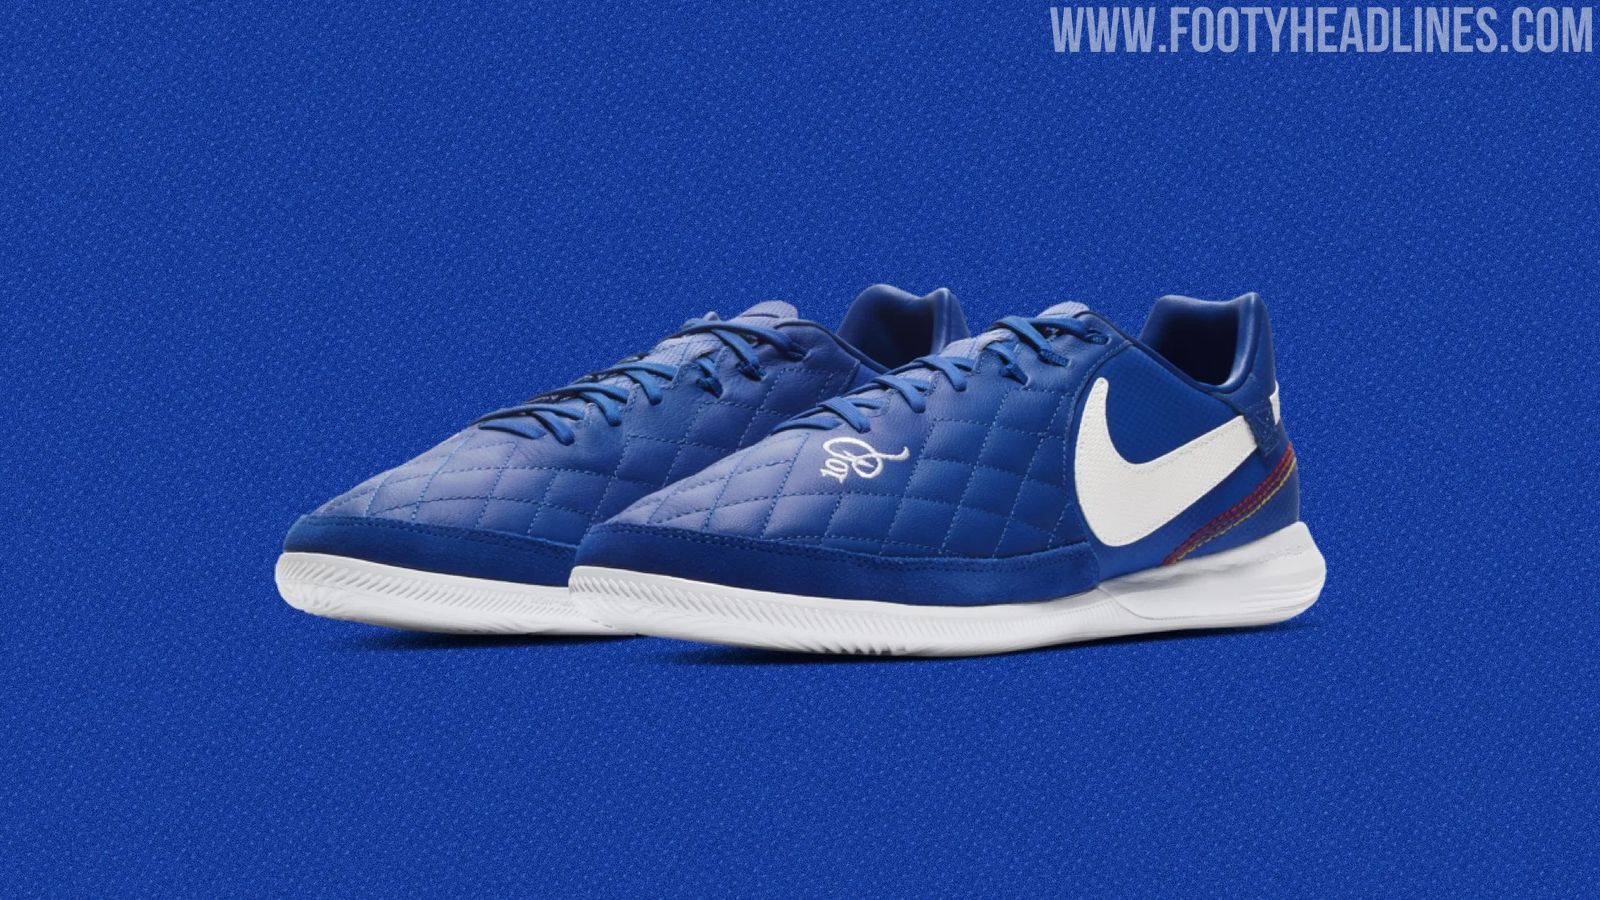 Minúsculo Sede Fuera de servicio Blue Brazil-Inspired Nike Tiempo Ronaldinho 2019 Indoor Boots Released -  Footy Headlines